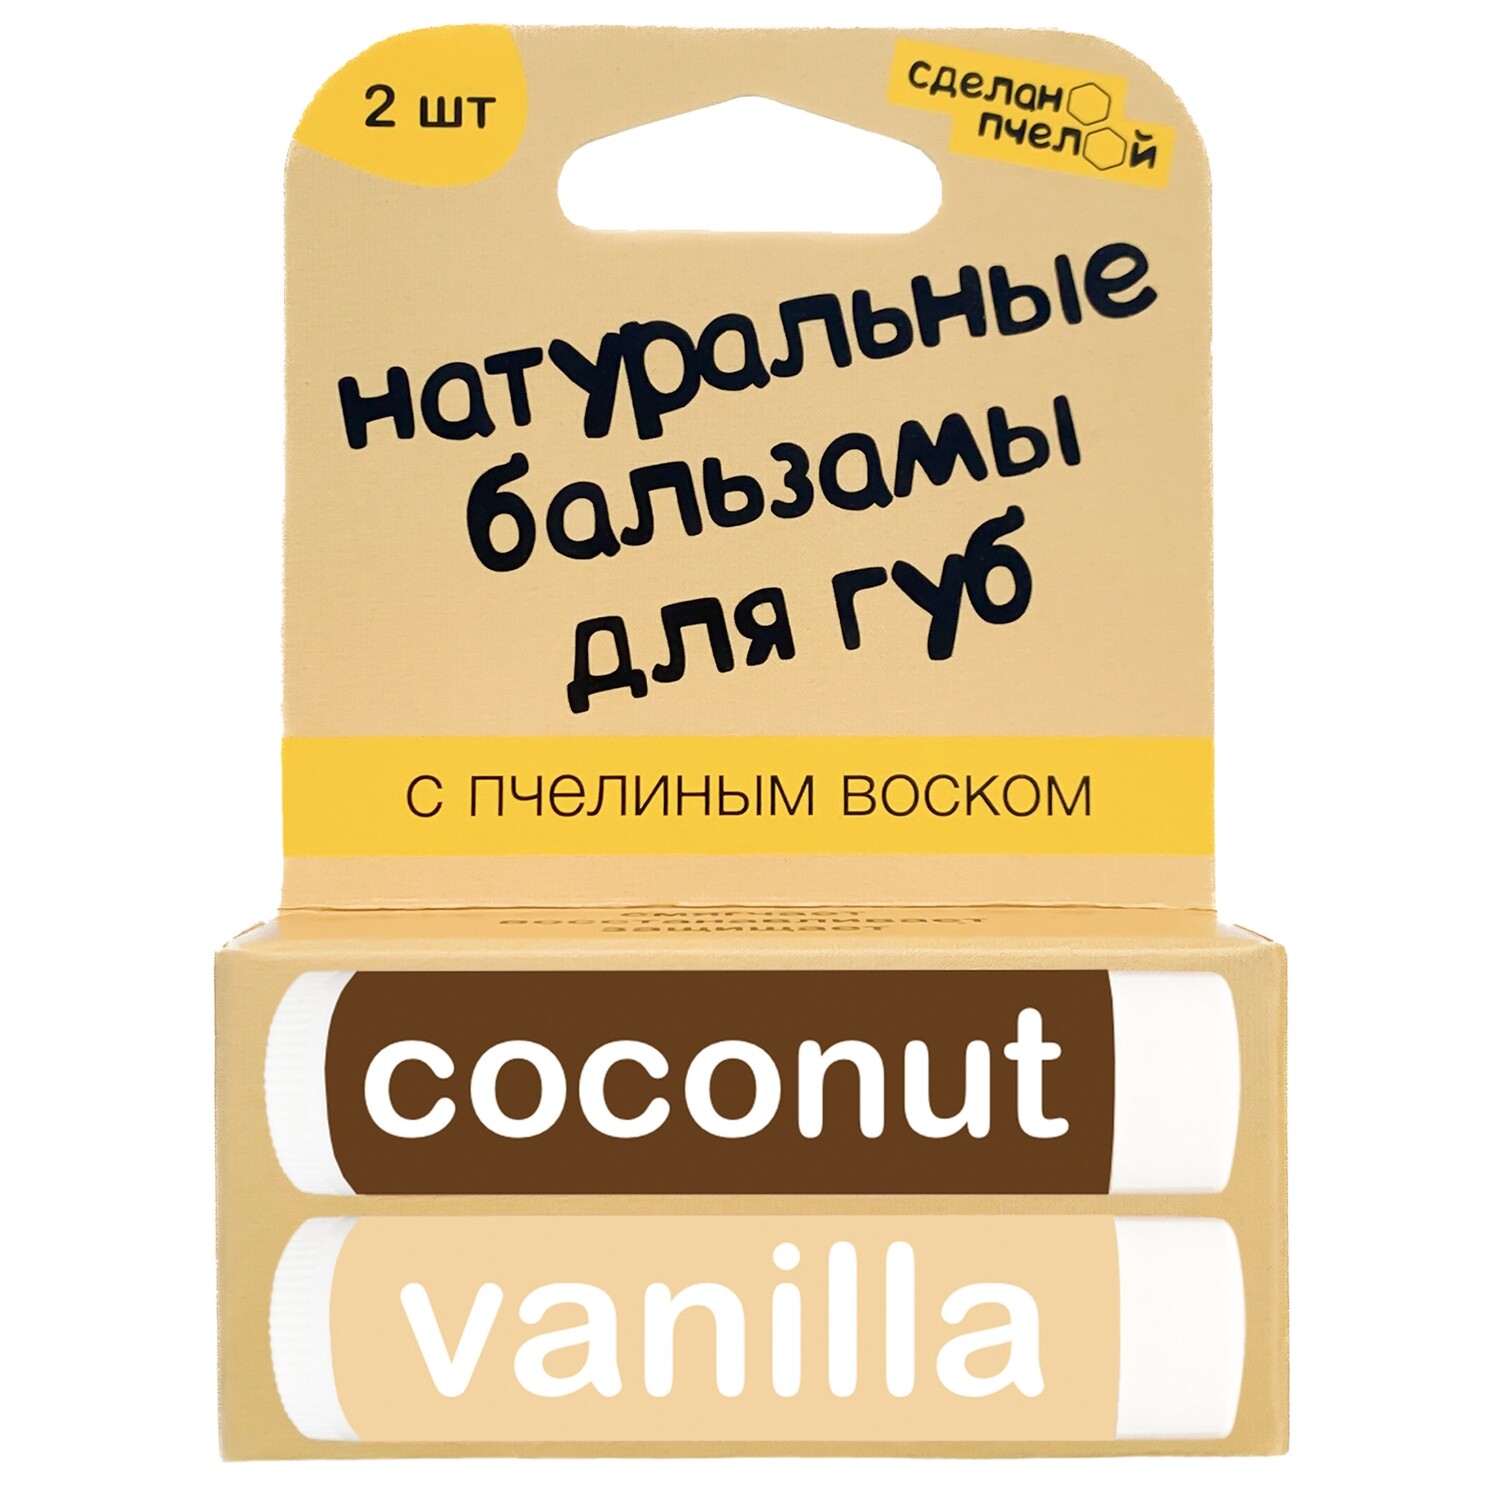 Натуральные бальзамы для губ "Coconut & Vanilla" 2 штуки